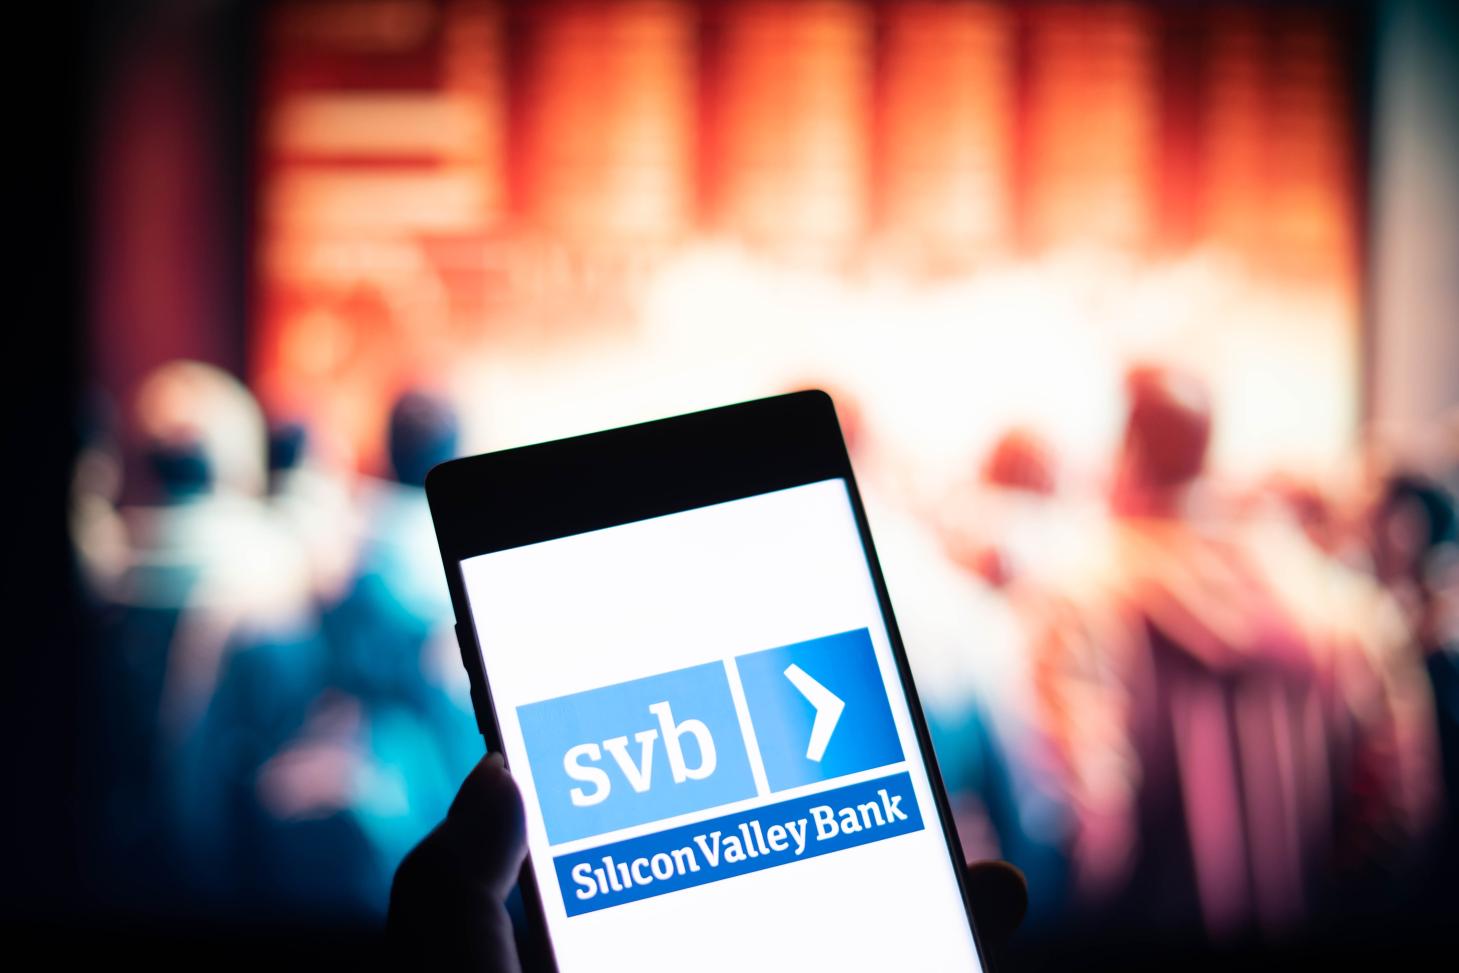 Silicon Valley Bank logo on a phone